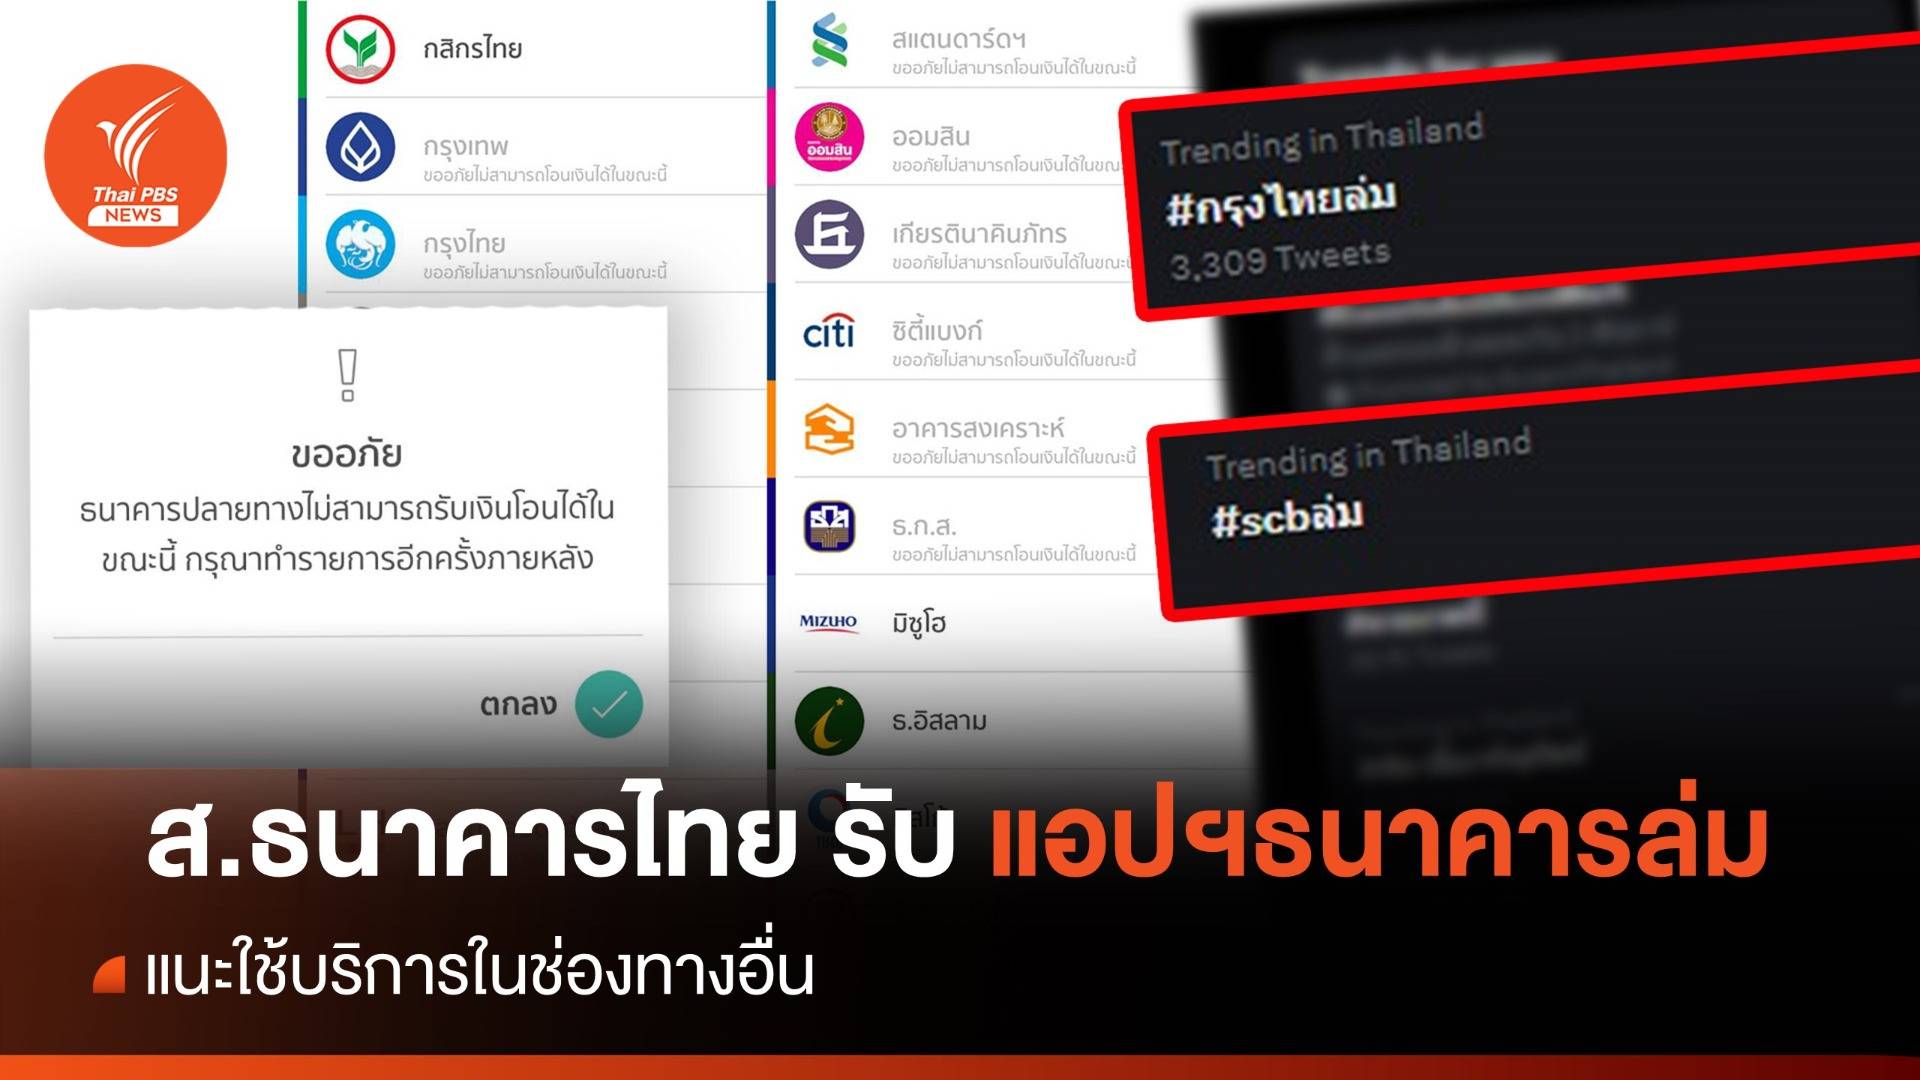 ส.ธนาคารไทย ยอมรับ "โมบายแบงก์กิ้ง -พร้อมเพย์" ขัดข้อง  - แนะใช้ช่องทางอื่น 